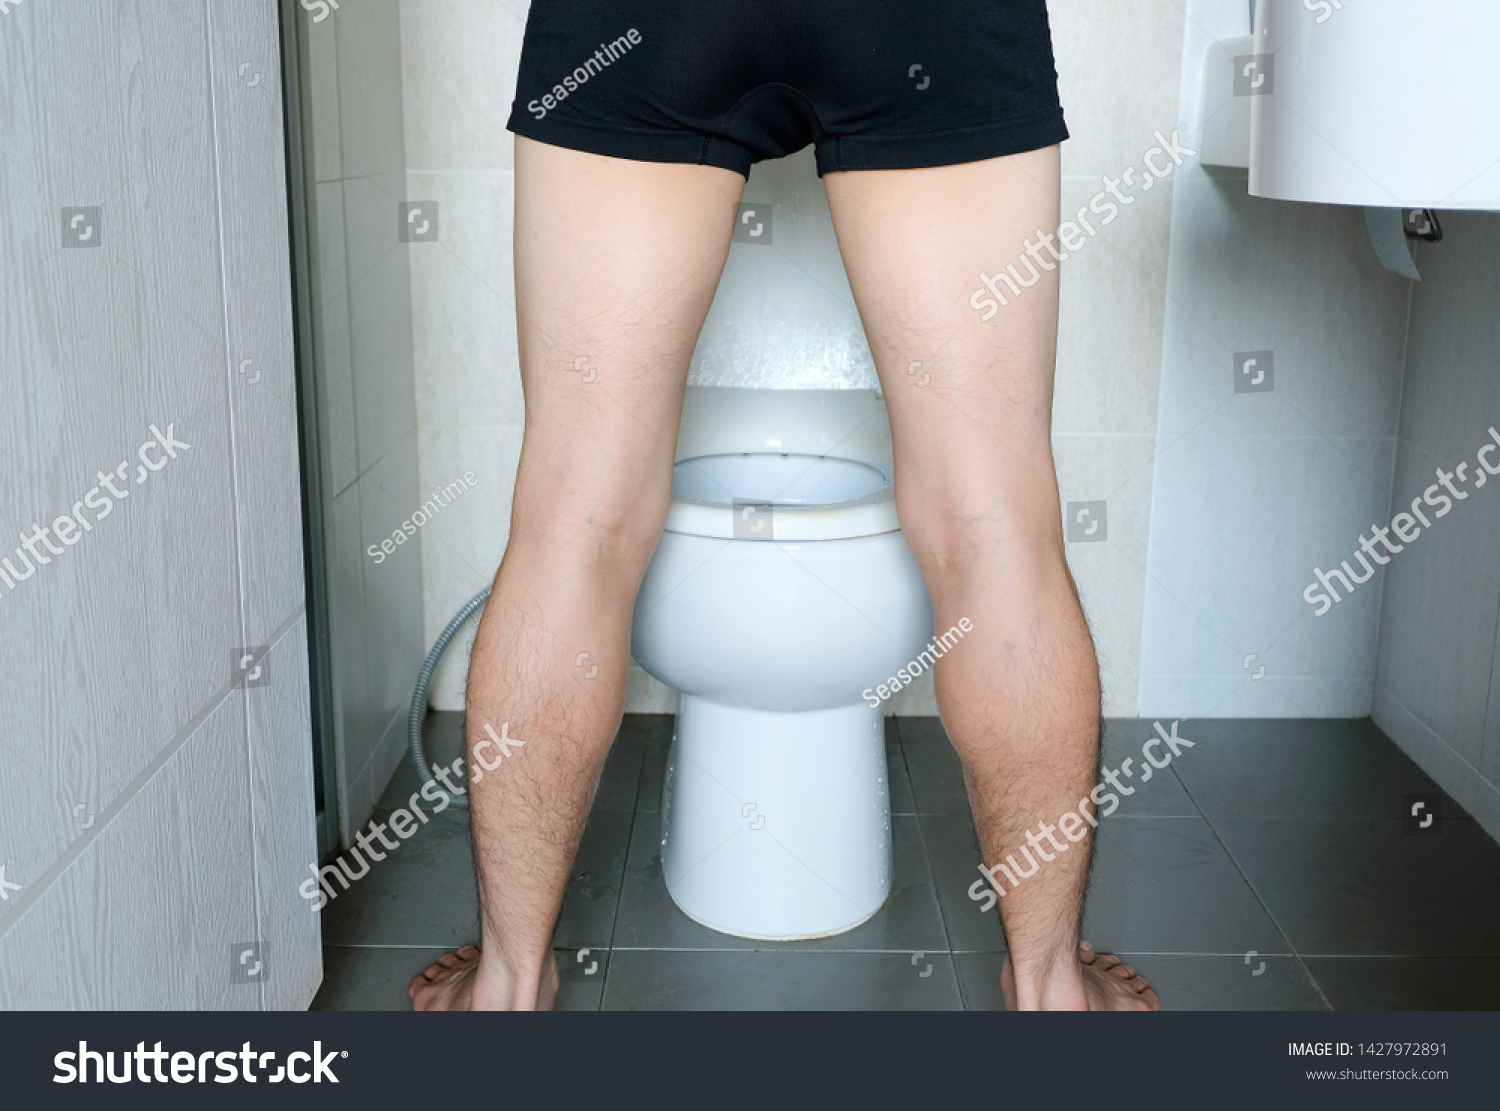 Man Peeing On Girls